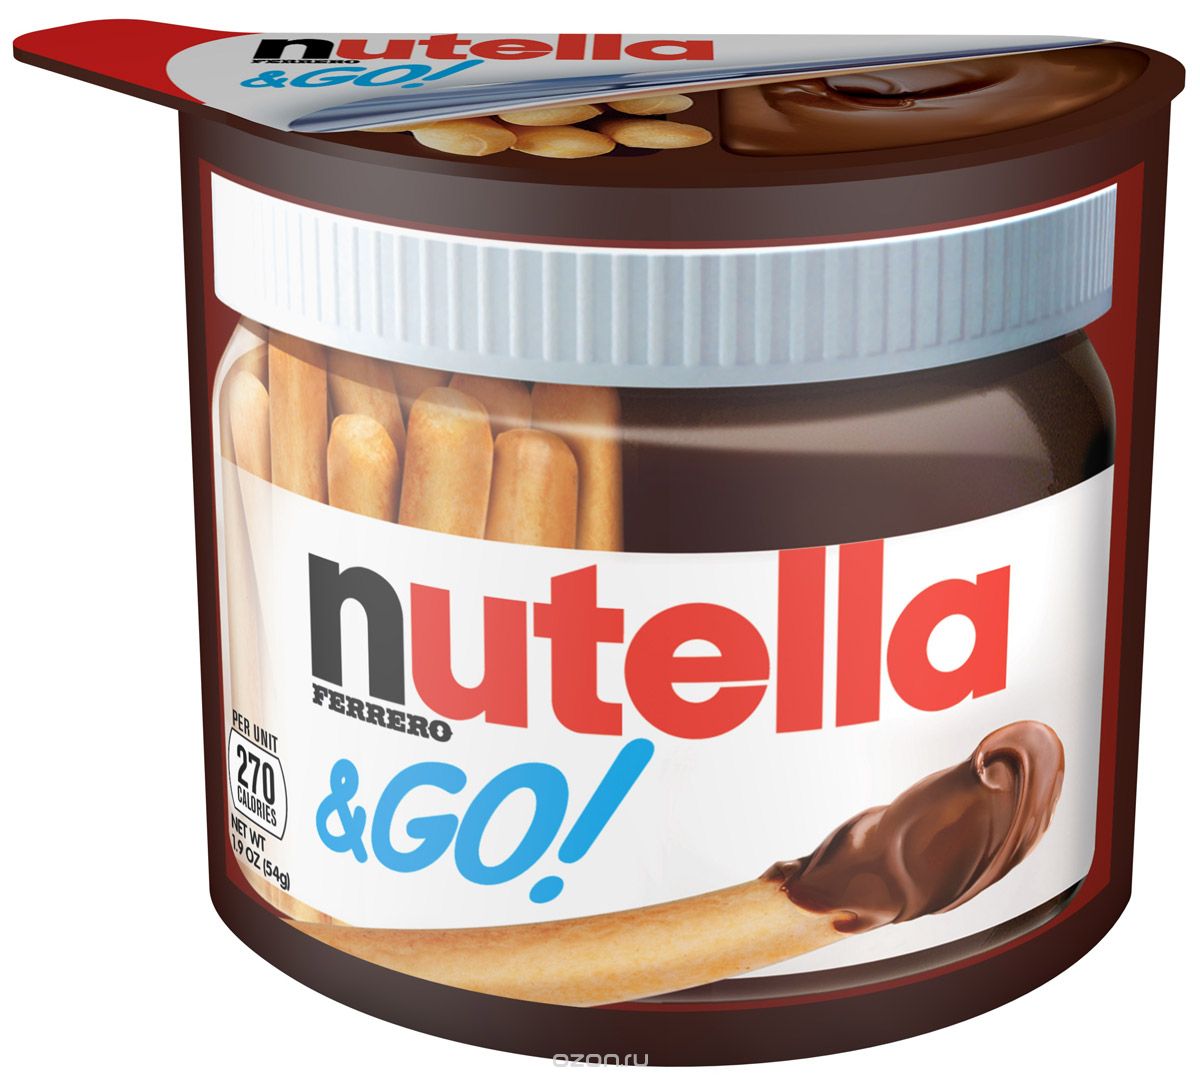        Nutella&Go,   , 52 